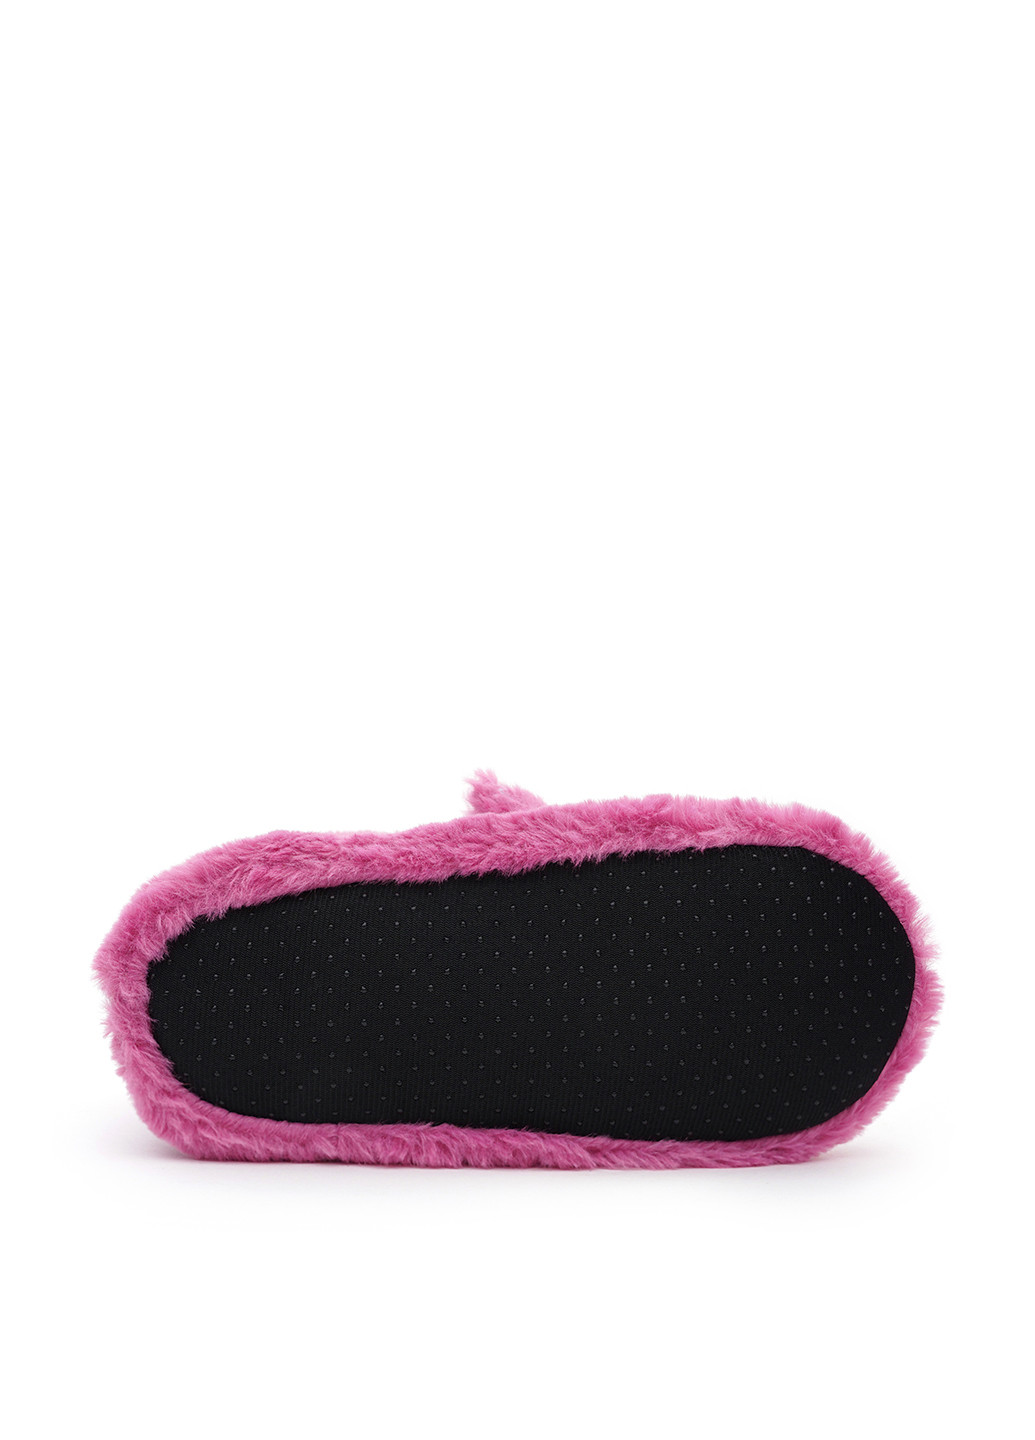 Фиолетовые тапочки Slippers с вышивкой, с аппликацией, с ушками